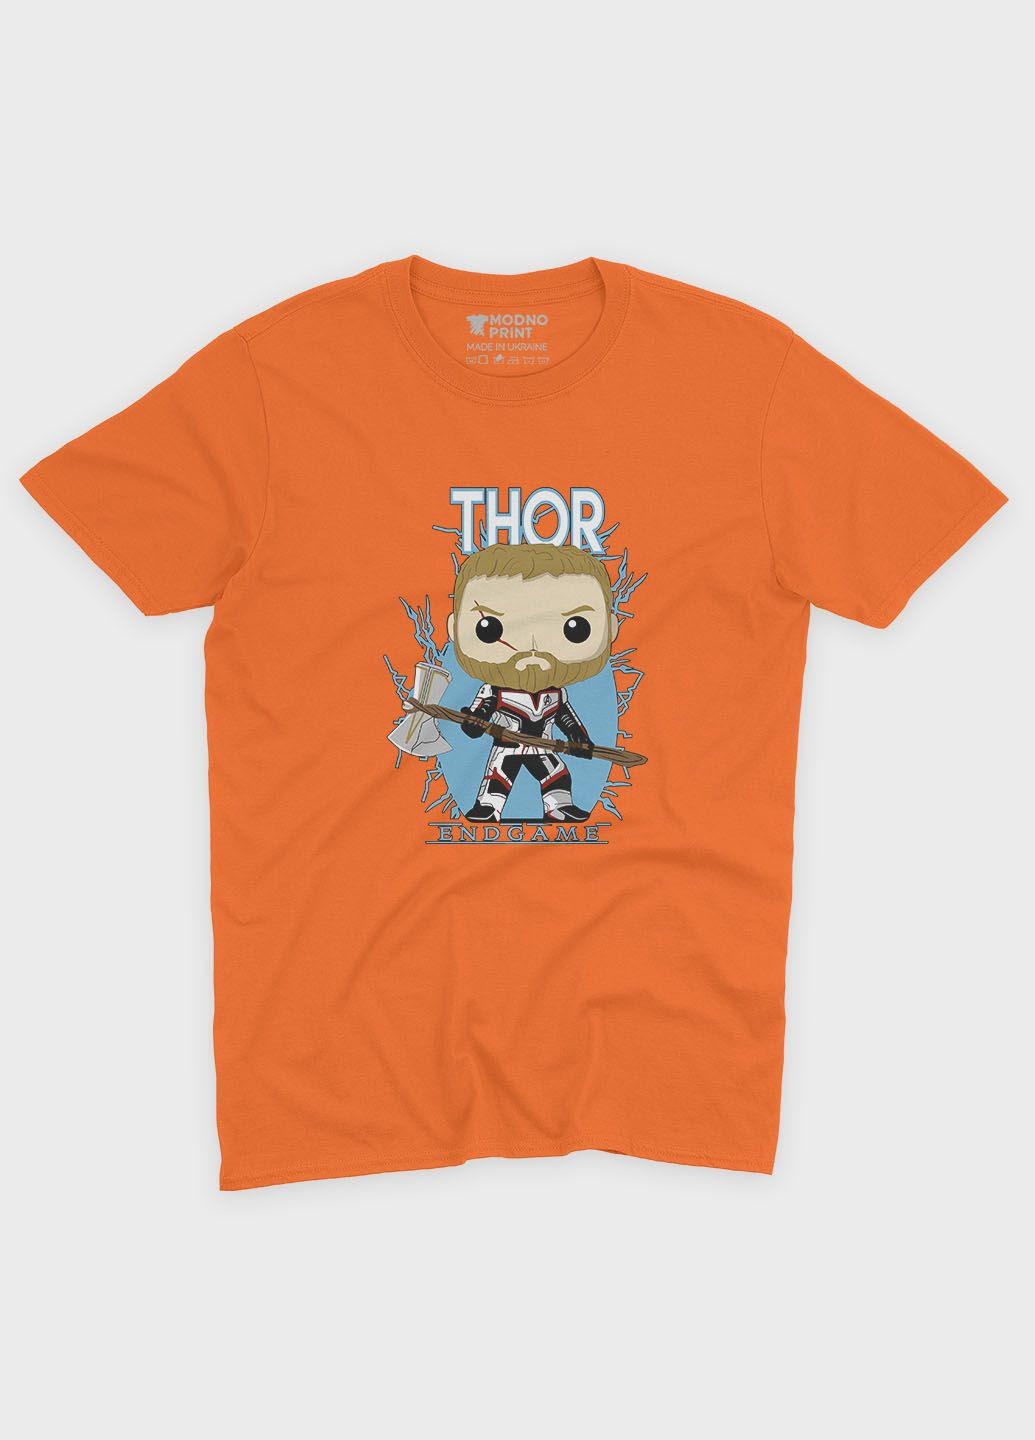 Помаранчева демісезонна футболка для хлопчика з принтом супергероя - тор (ts001-1-ora-006-024-004-b) Modno